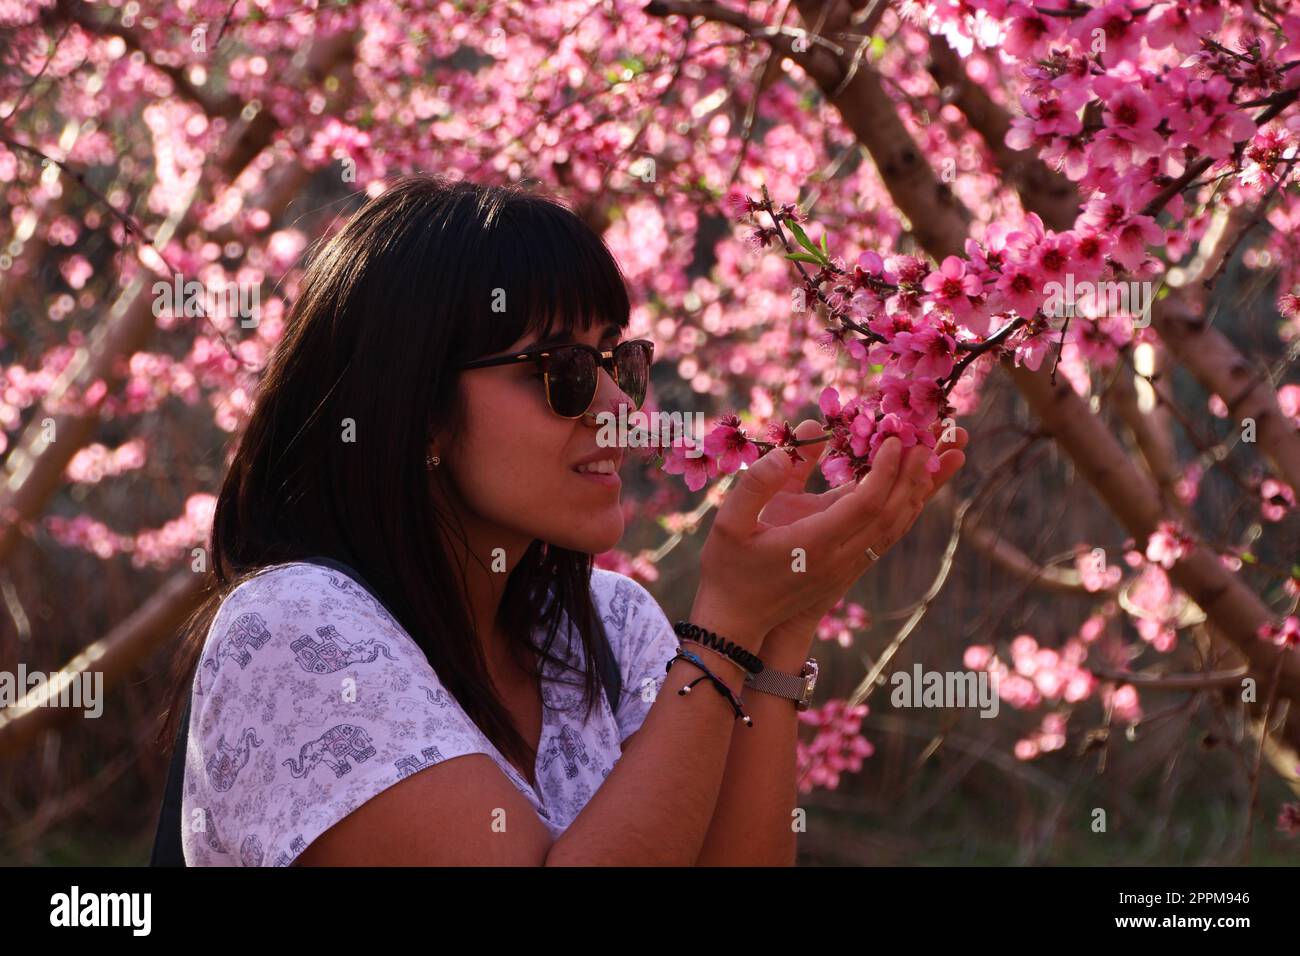 Die Frau riecht die hübschen pinkfarbenen Pfirsichblüten. Stockfoto